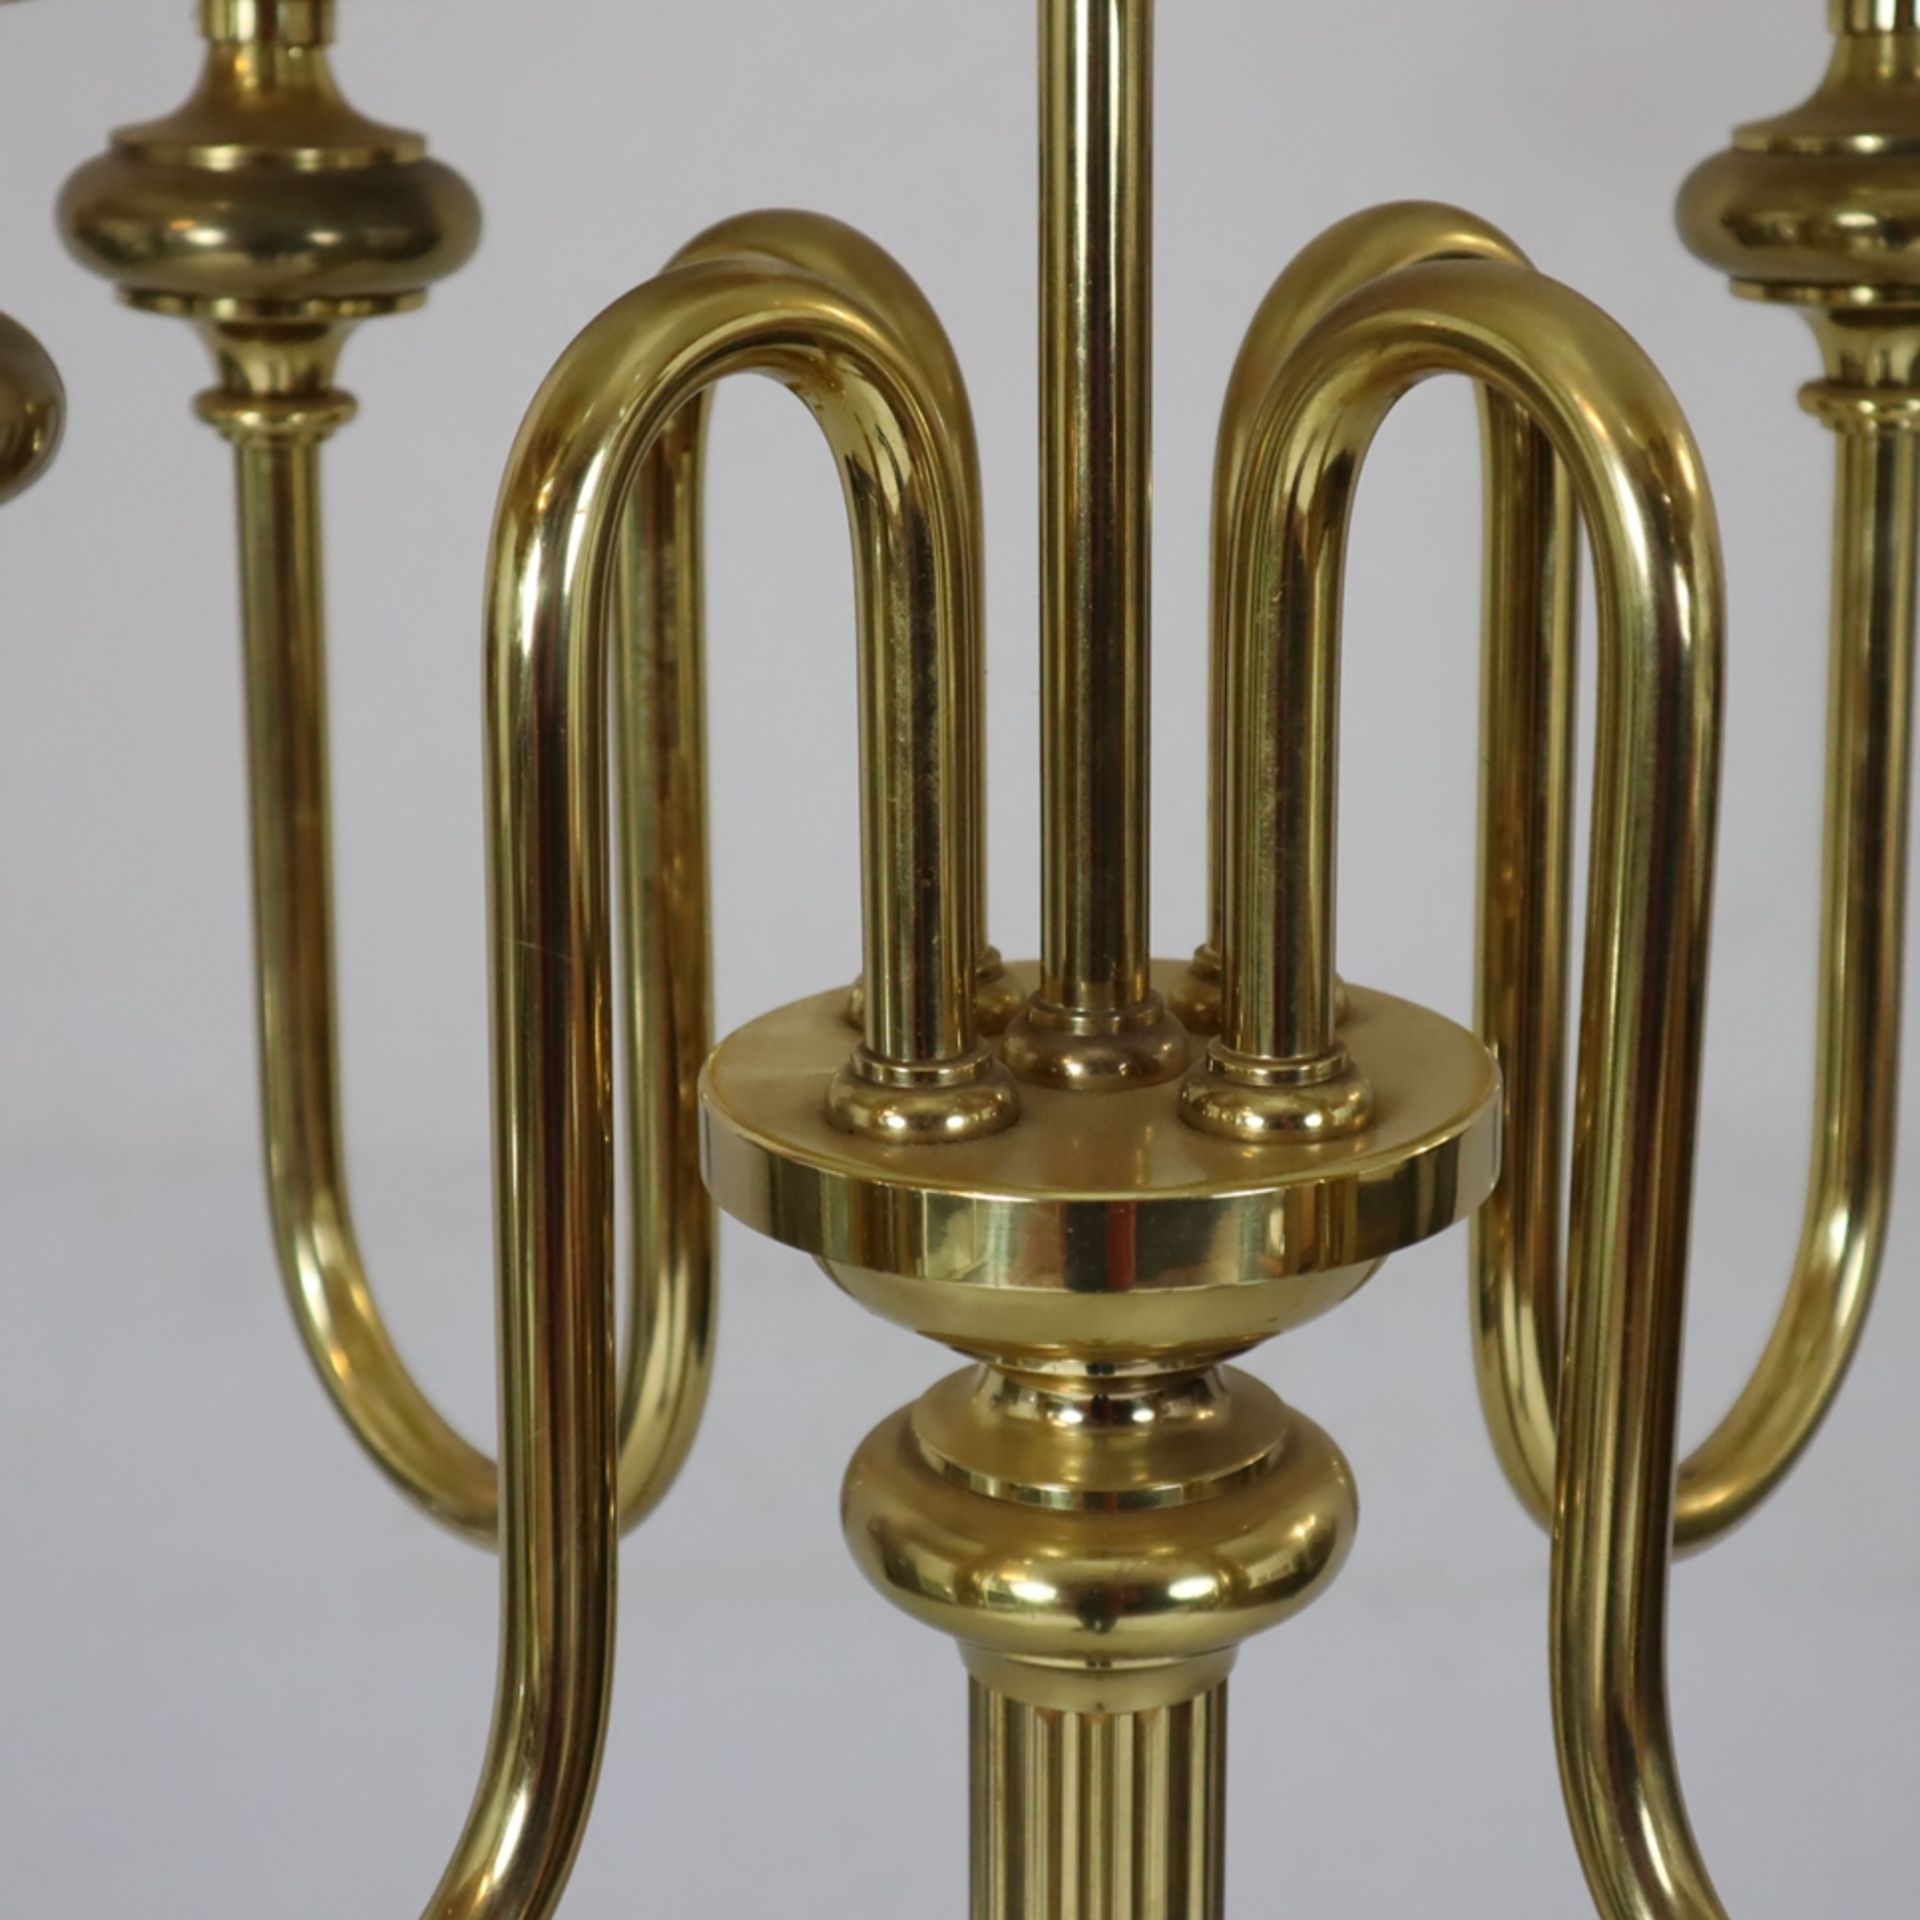 Imposante Vintage-Stehlampe - Messing, fünfflammig, über rundem Stand nodierter kannelierter Schaft - Image 3 of 7